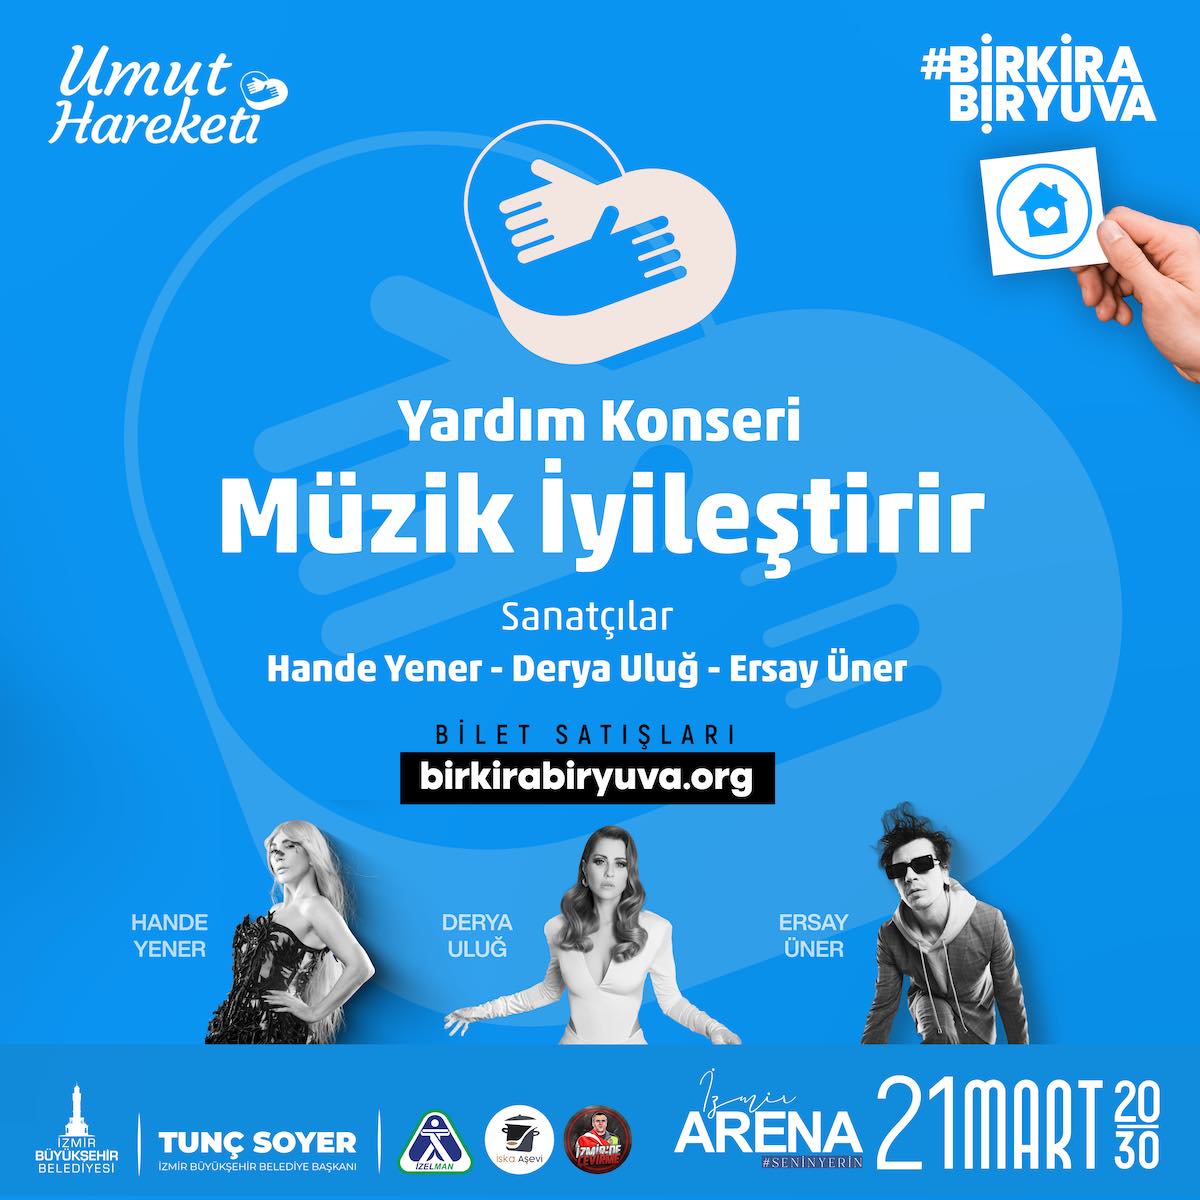 Hande Yener, Derya Uluğ, Ersay Üner BirKiraBirYuva kampanyası için 21 Mart'ta İzmir Arena sahnesinde buluşuyor. | İzmir Mekan Rehberi